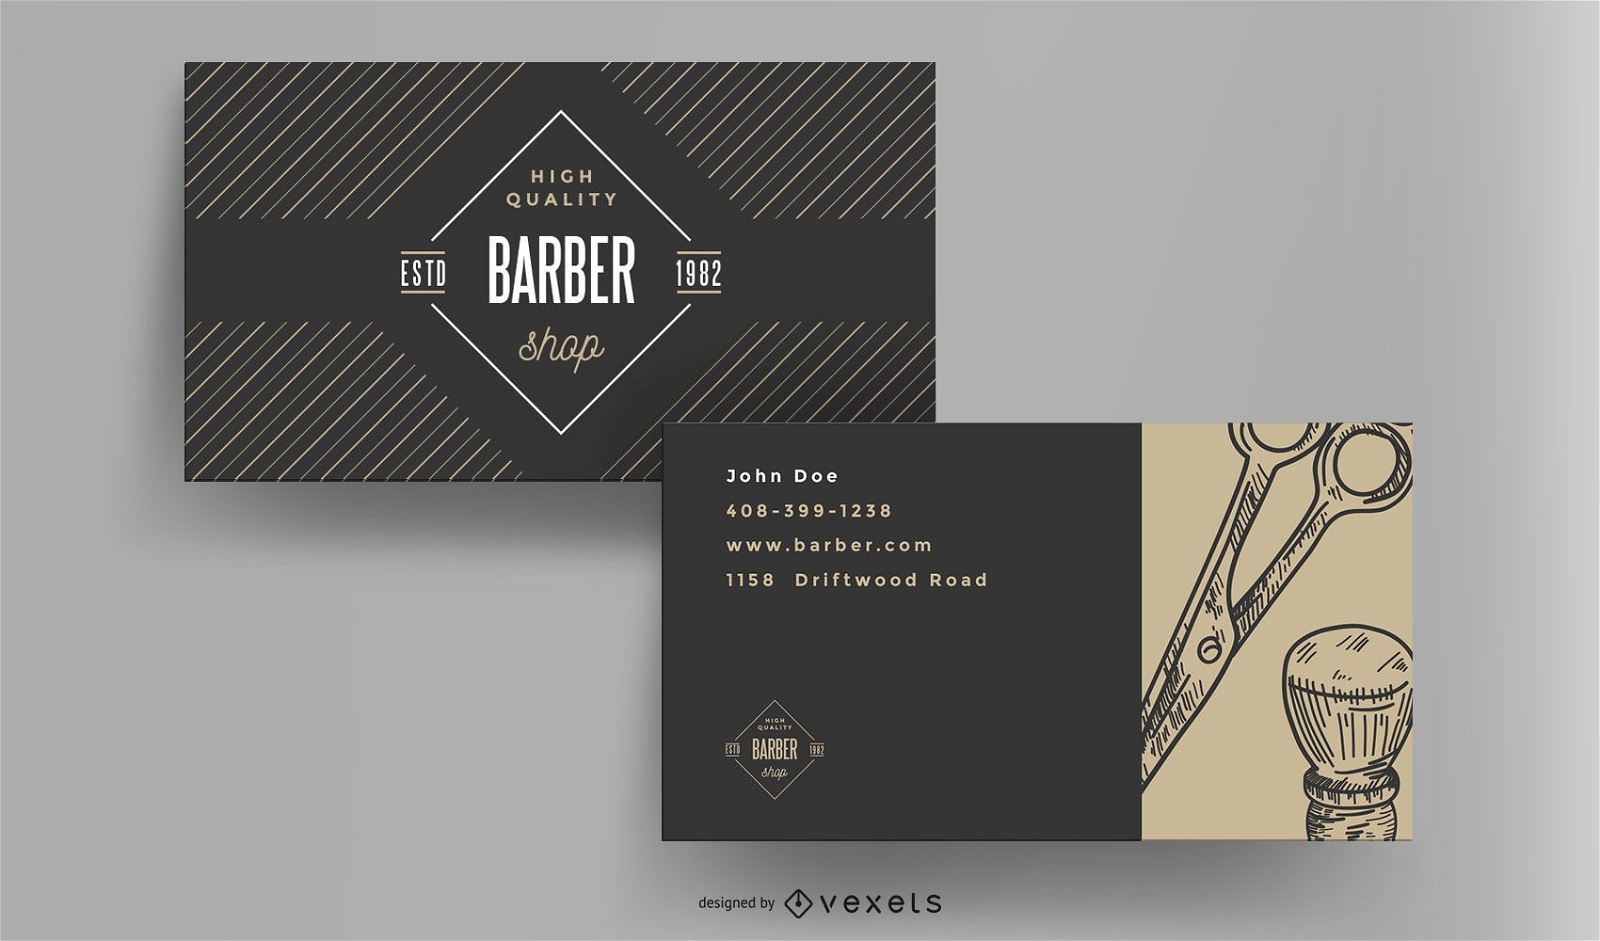 Barber shop vintage business card